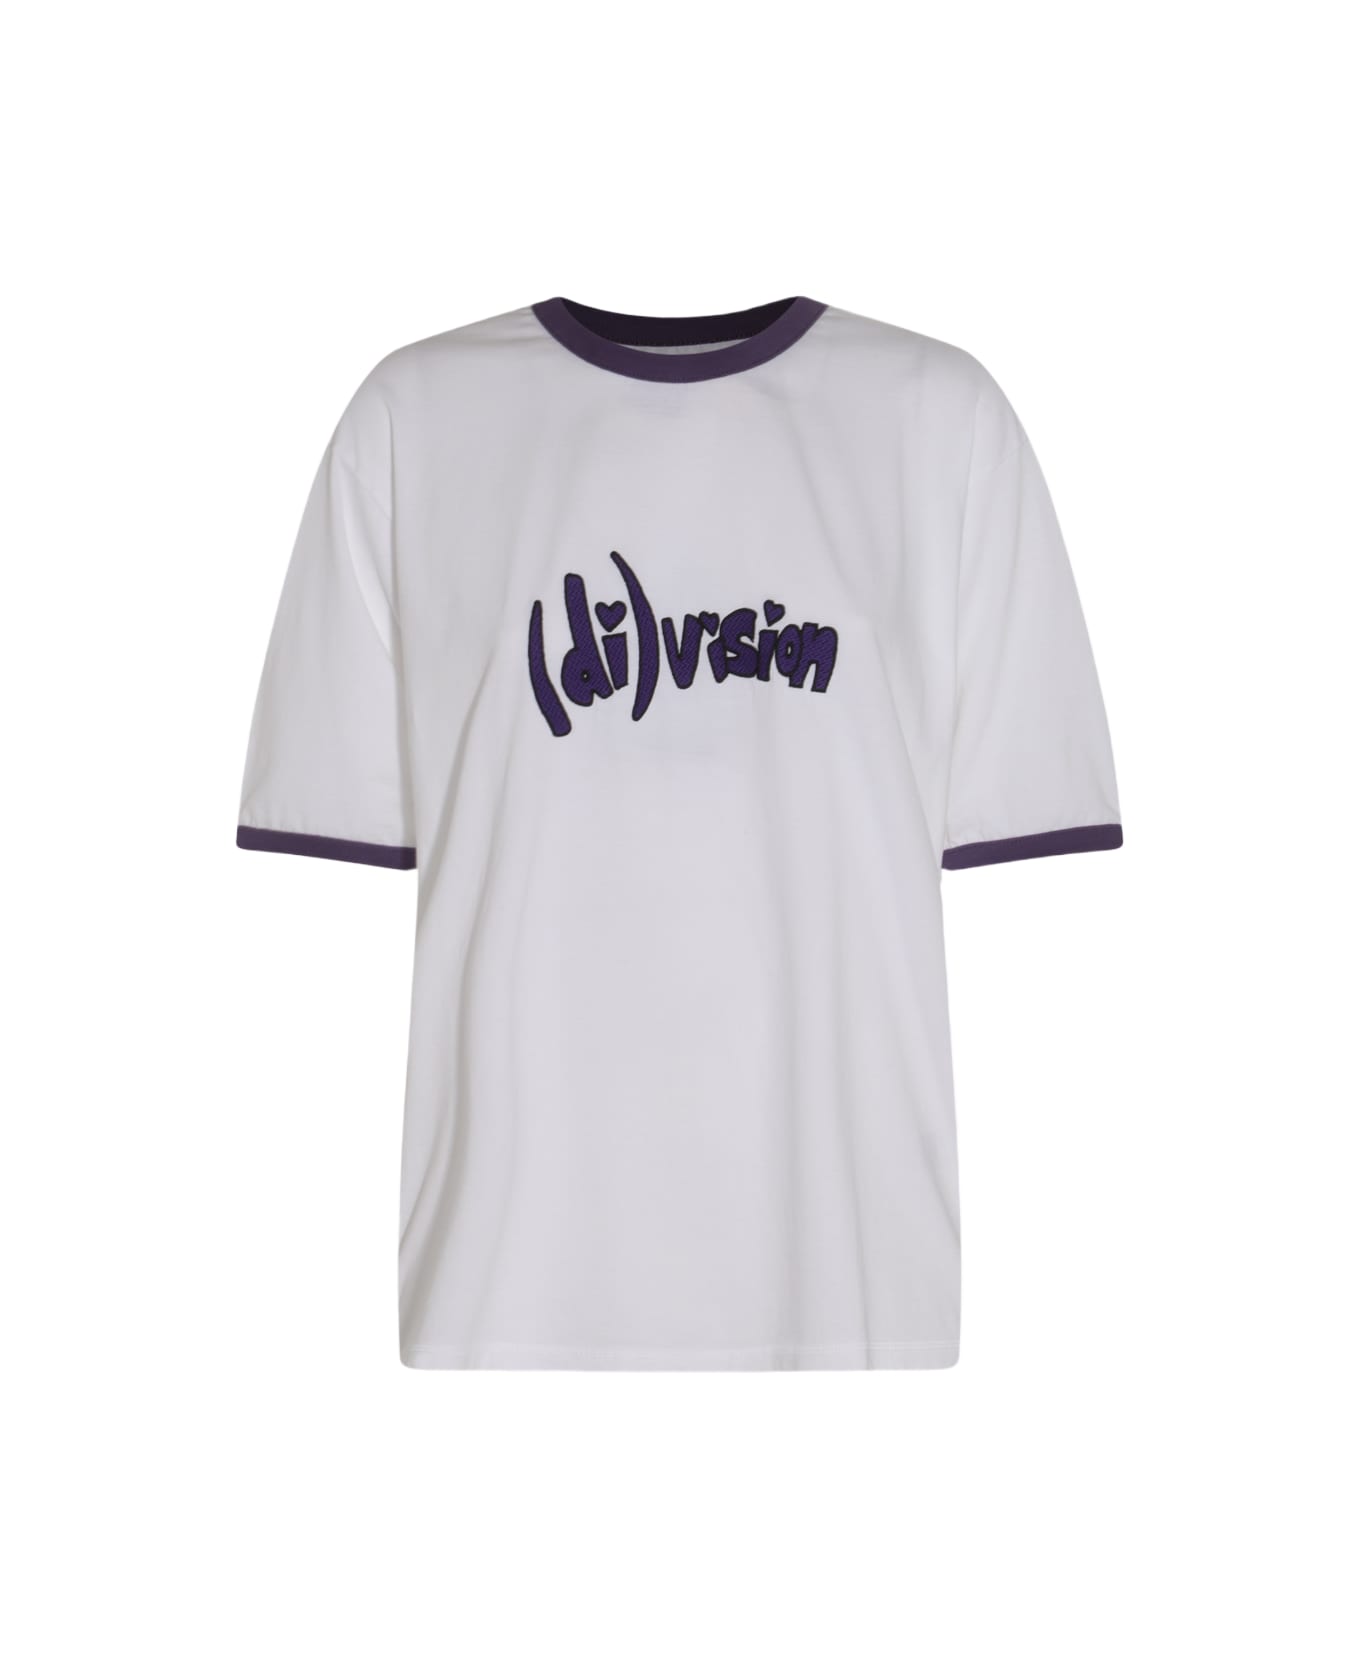 (di)vision White Cotton T-shirt - White